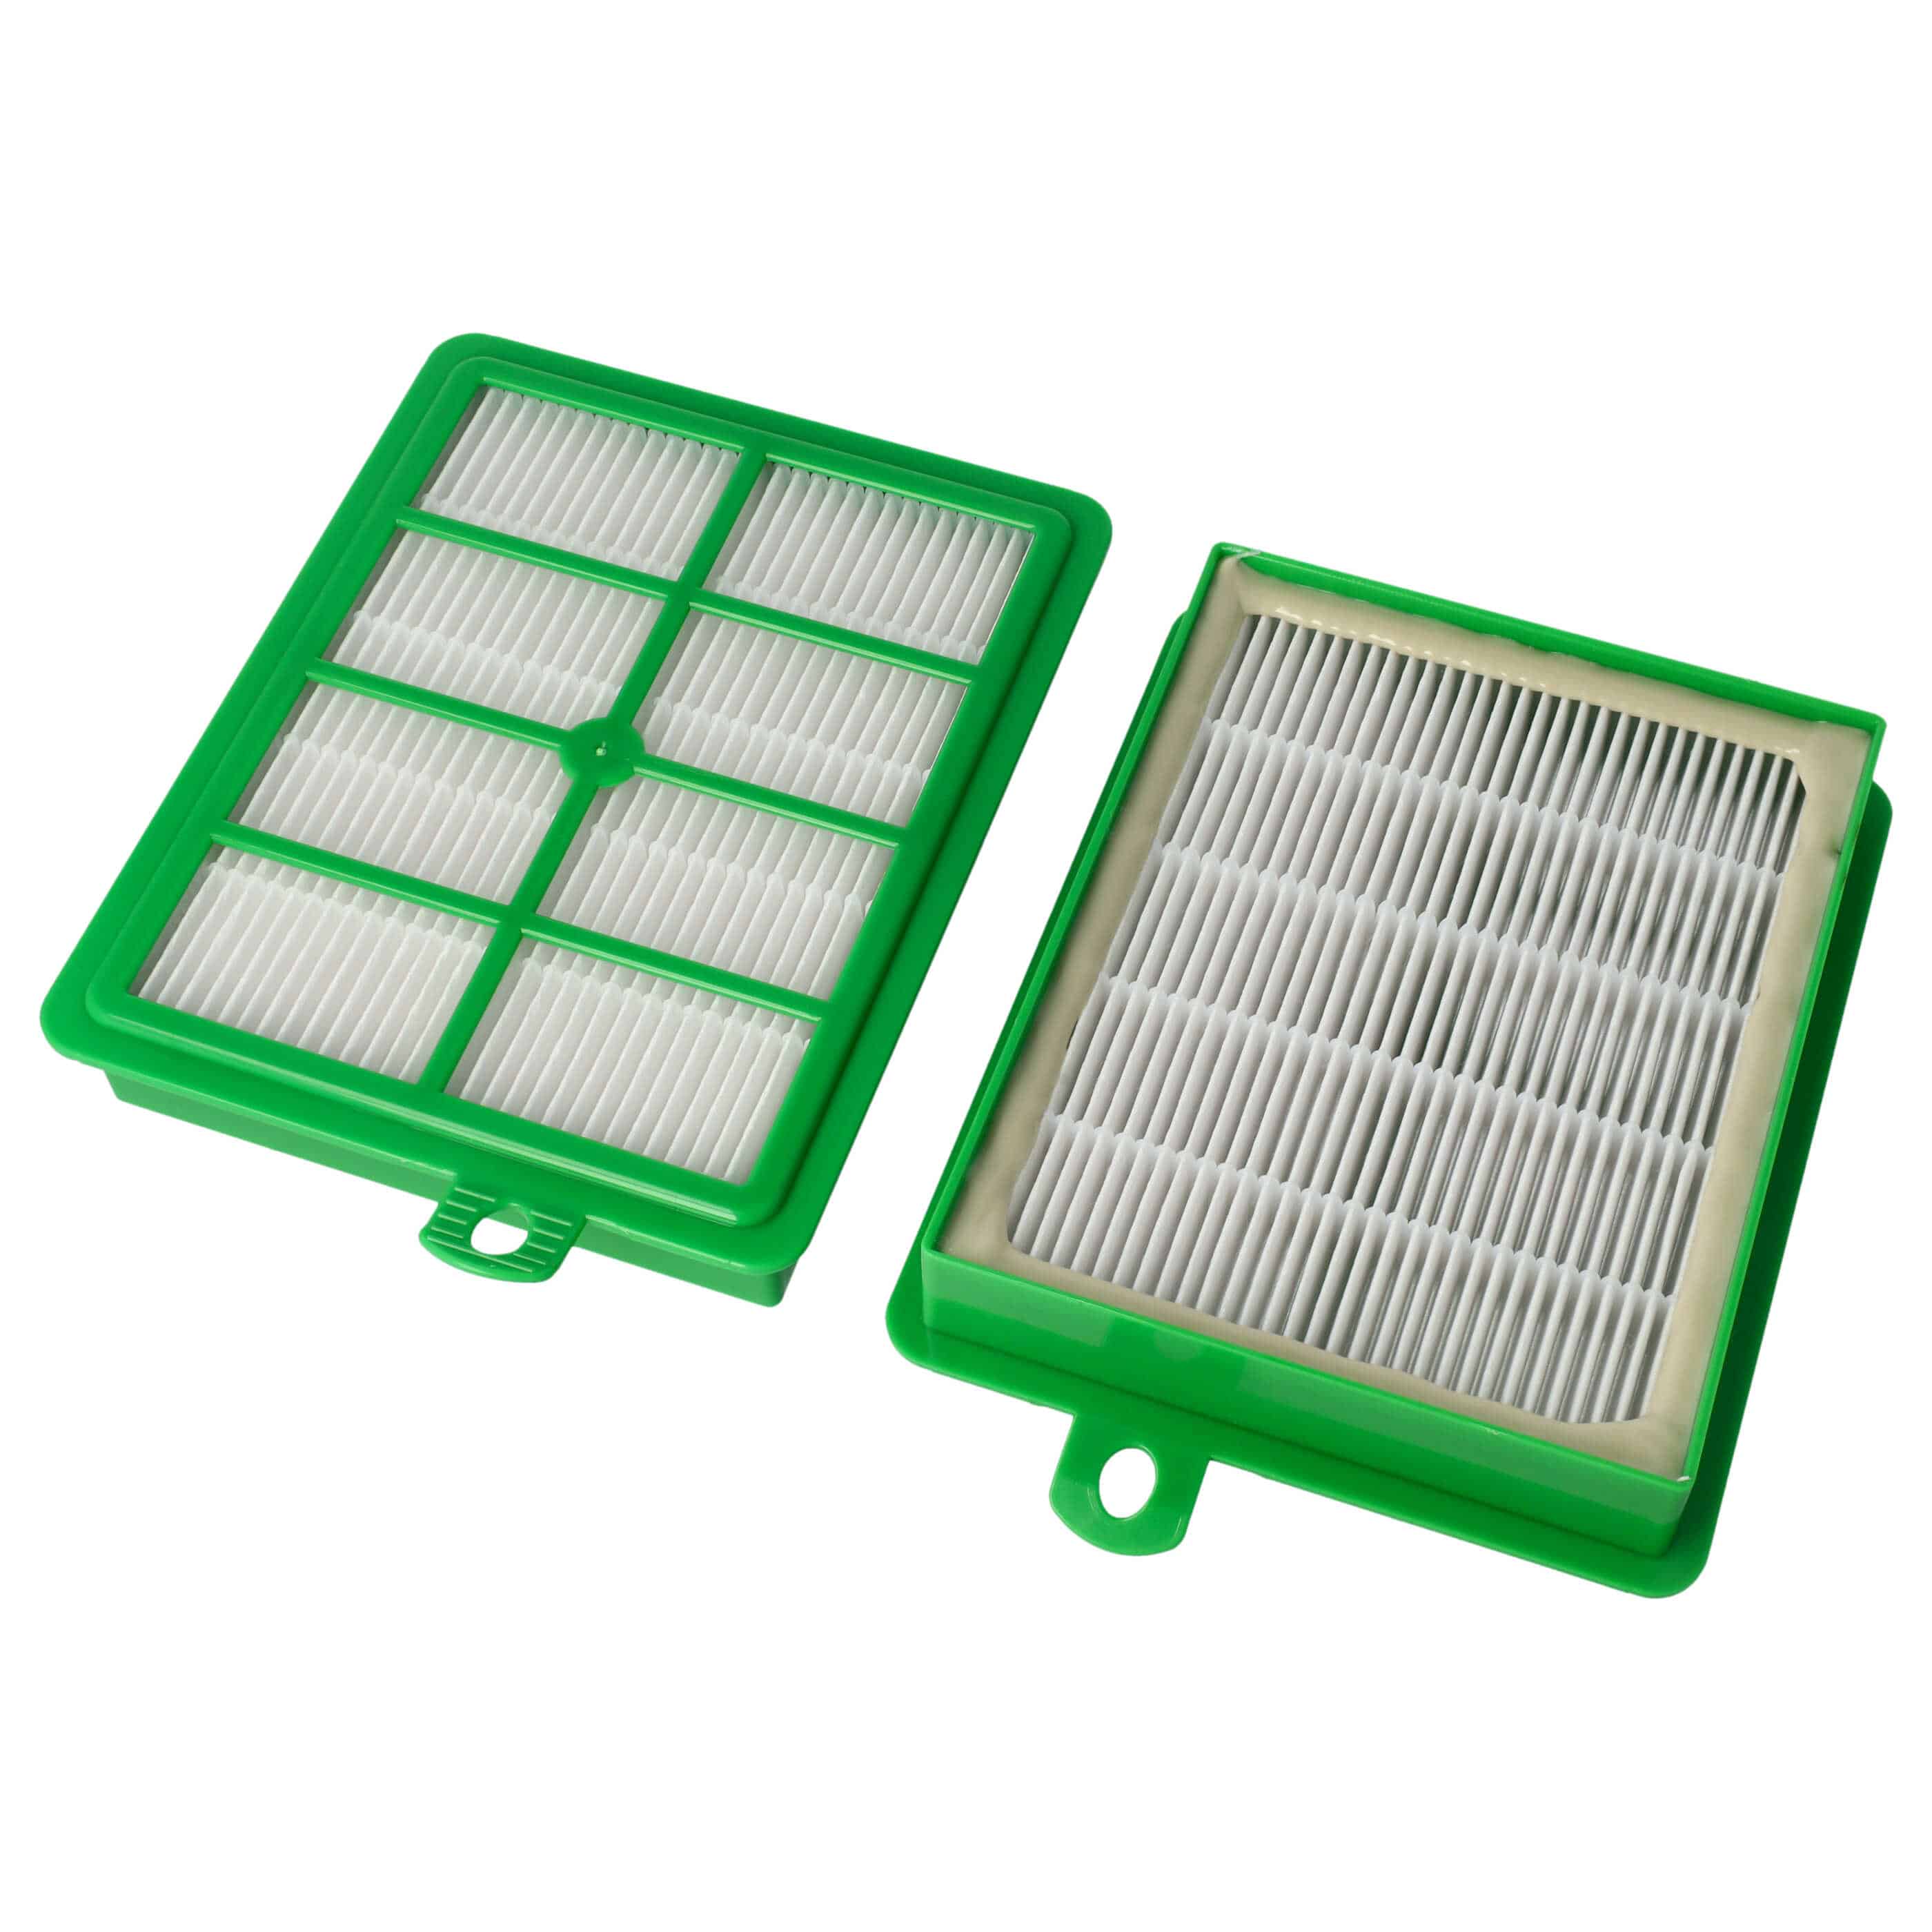 2x Filtro sostituisce AEG ASF1W, AFS1, E 12, AFS1W, AEFG12W per aspirapolvere - filtro HEPA, bianco / verde